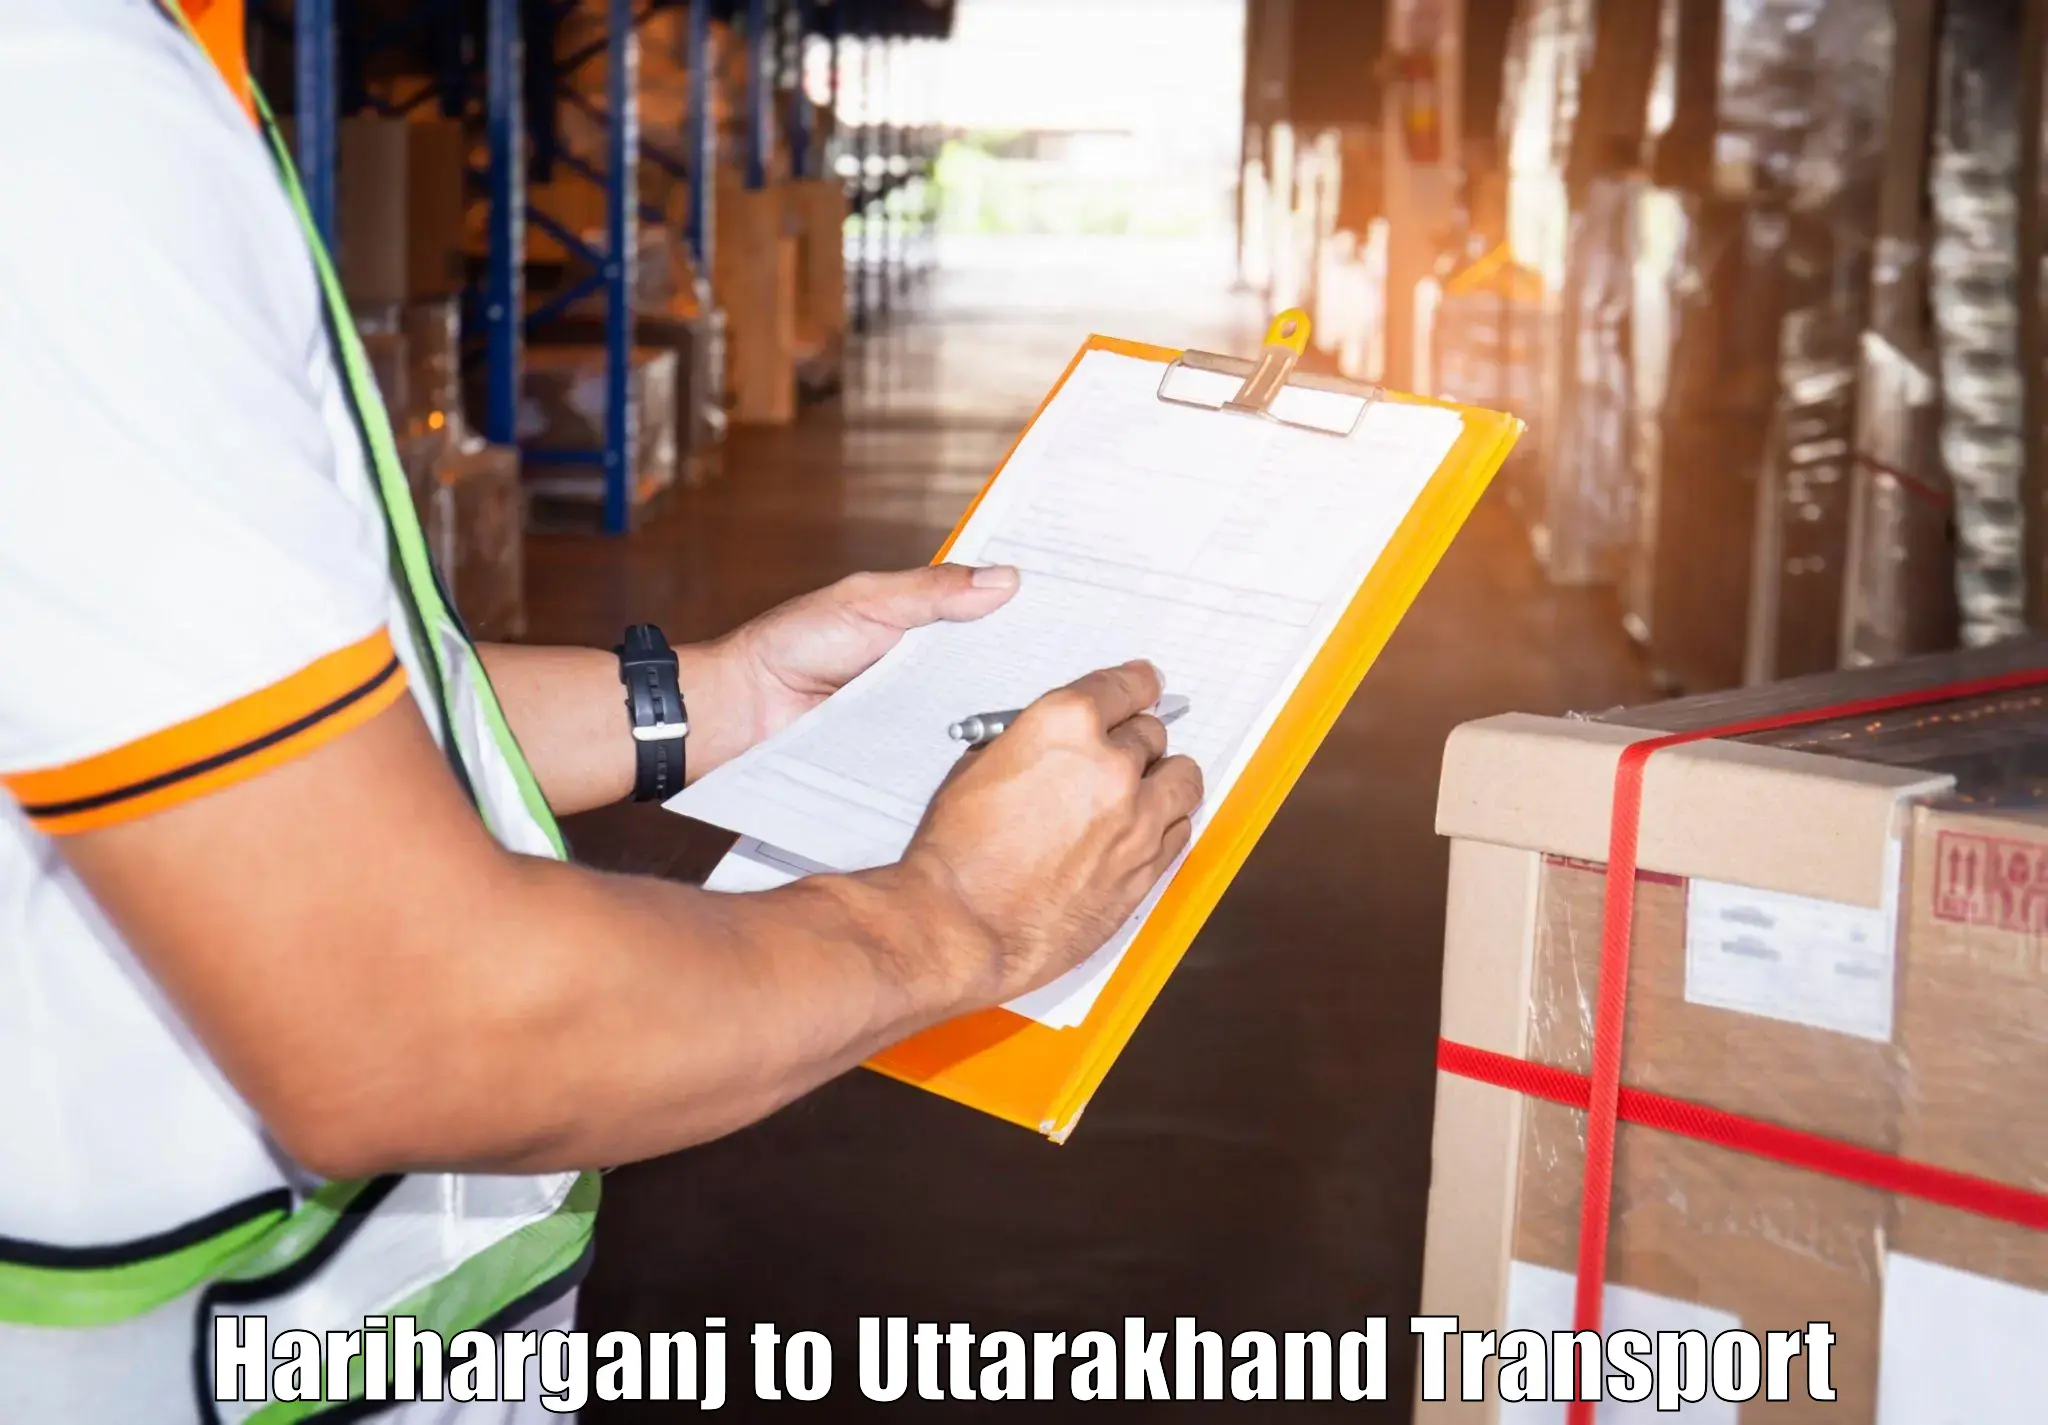 Pick up transport service Hariharganj to Kotdwara